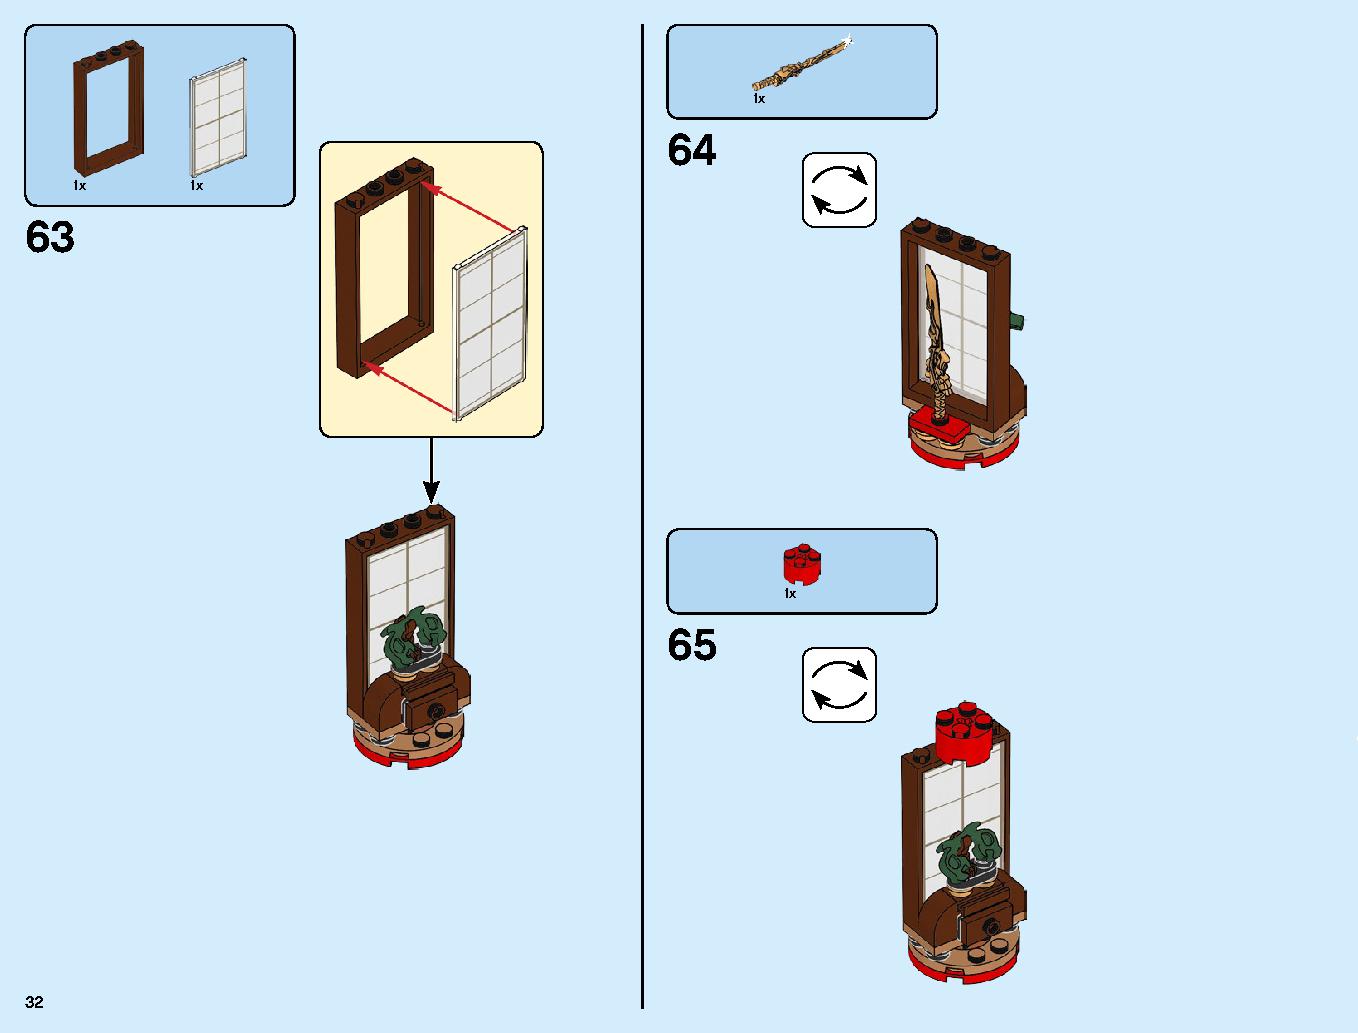 ニンジャ道場 70670 レゴの商品情報 レゴの説明書・組立方法 32 page